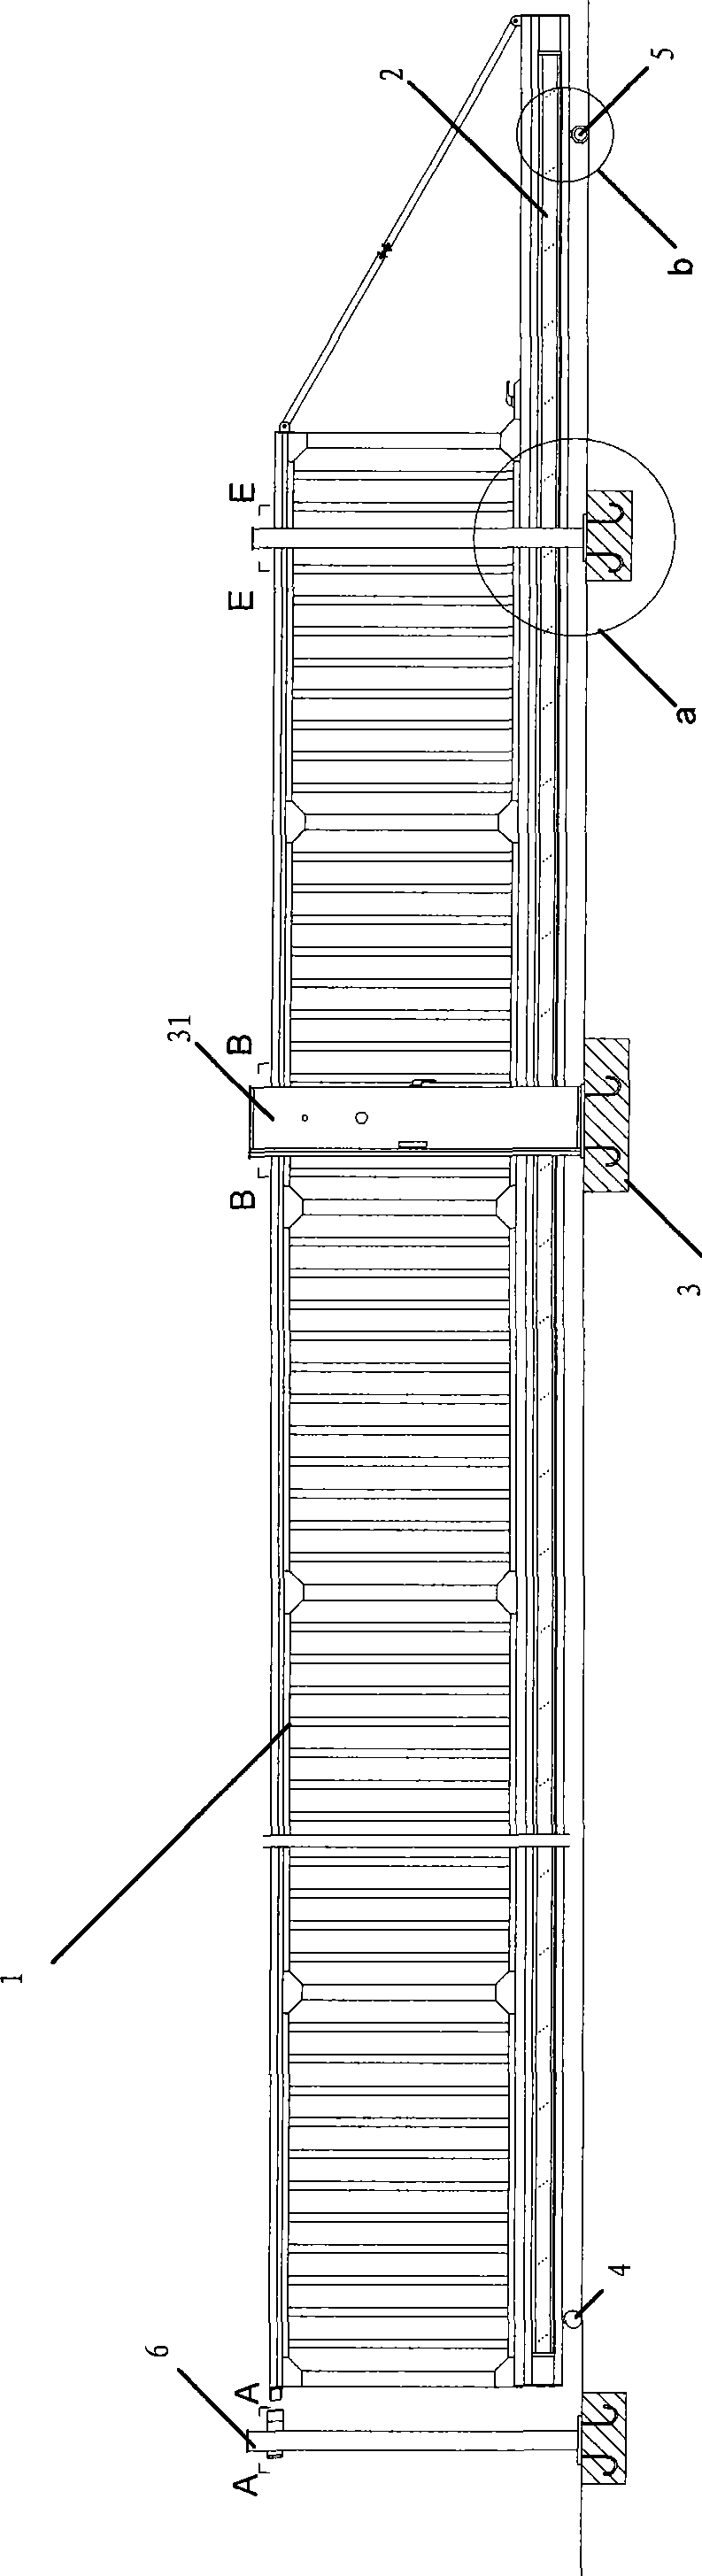 Suspending type sliding door mechanism